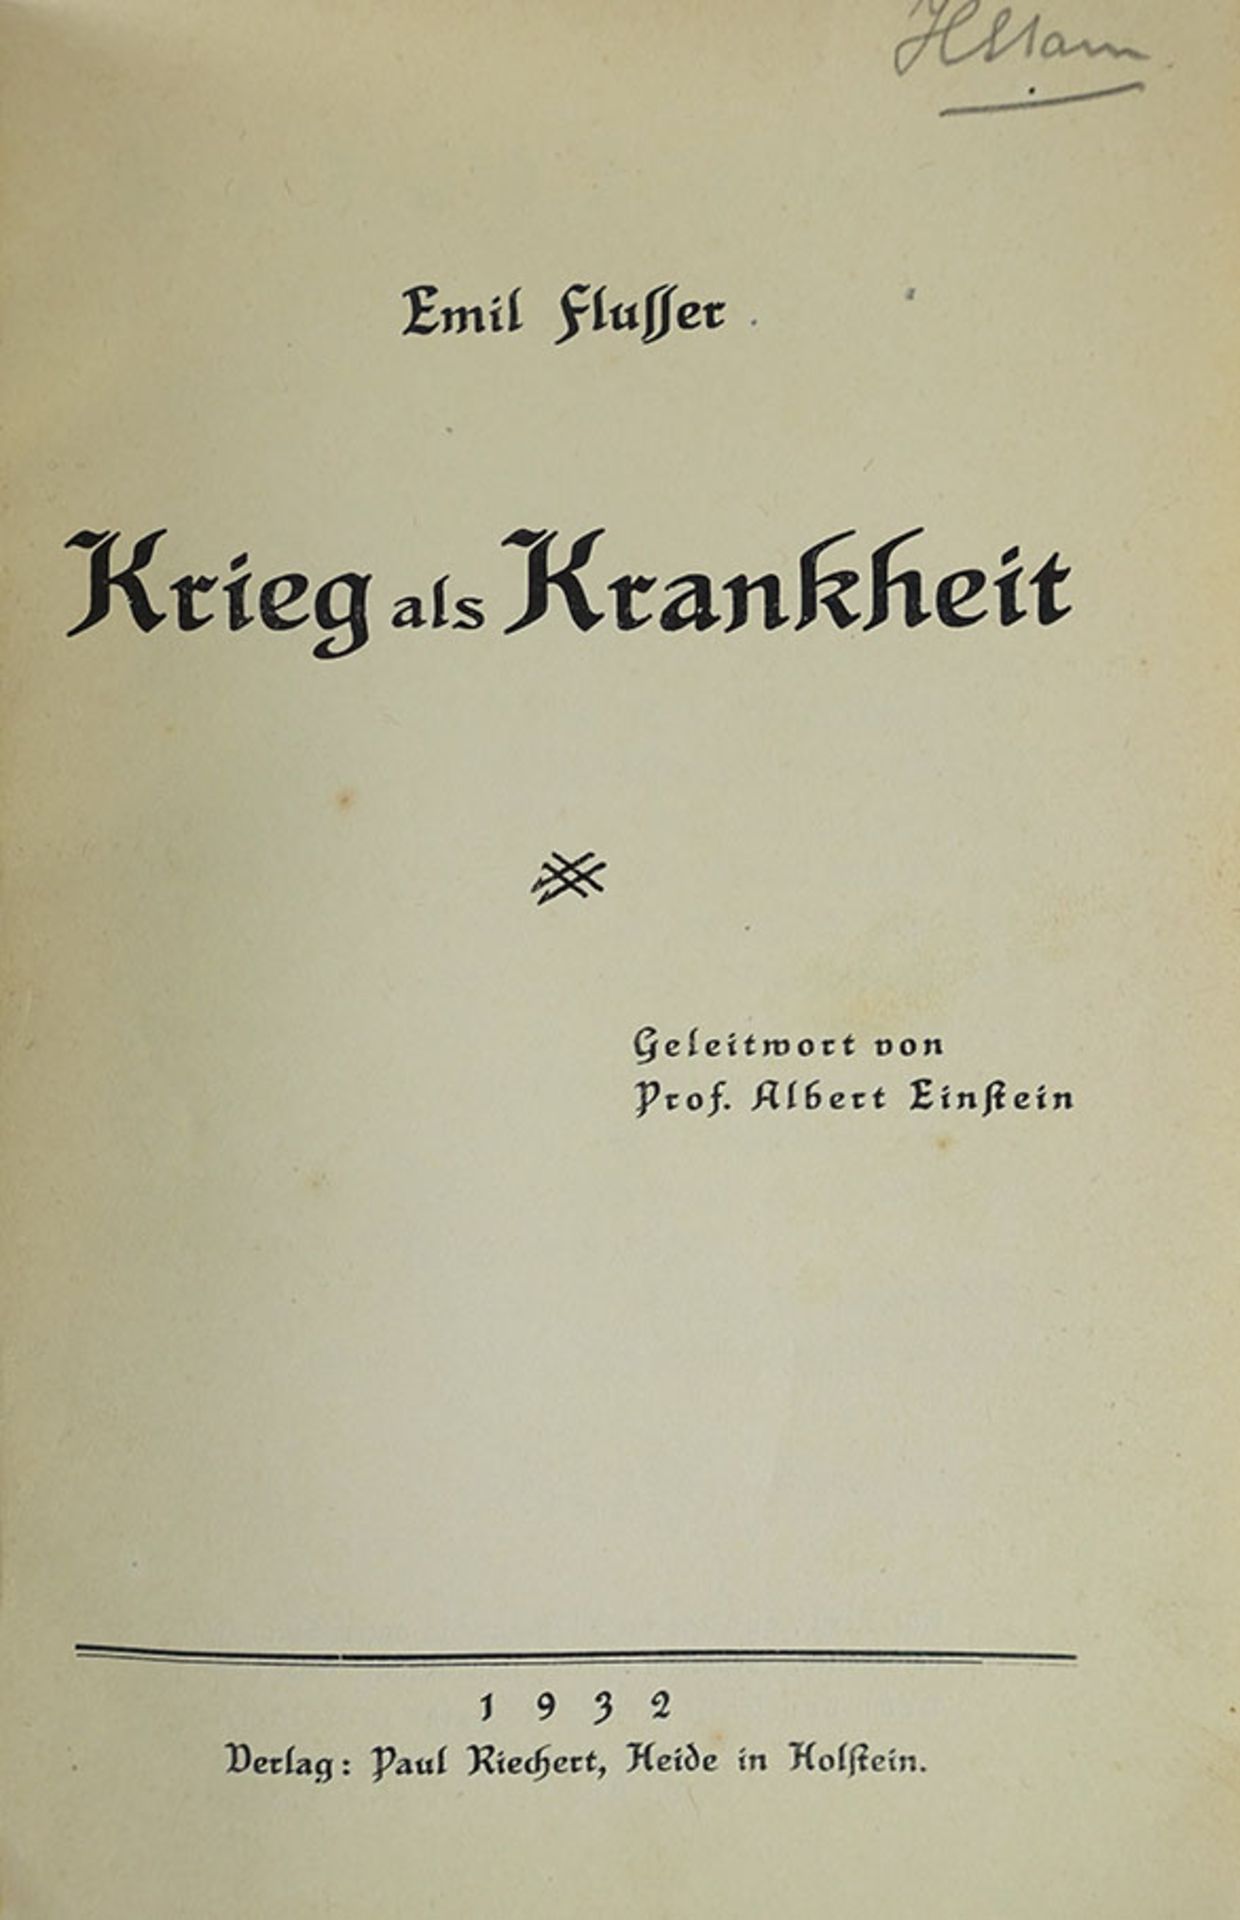 FLUSSER, E. Krieg als Krankheit. Geleitwort v. A. Einstein. Heide in Holstein, P. Riechert, 1932. (